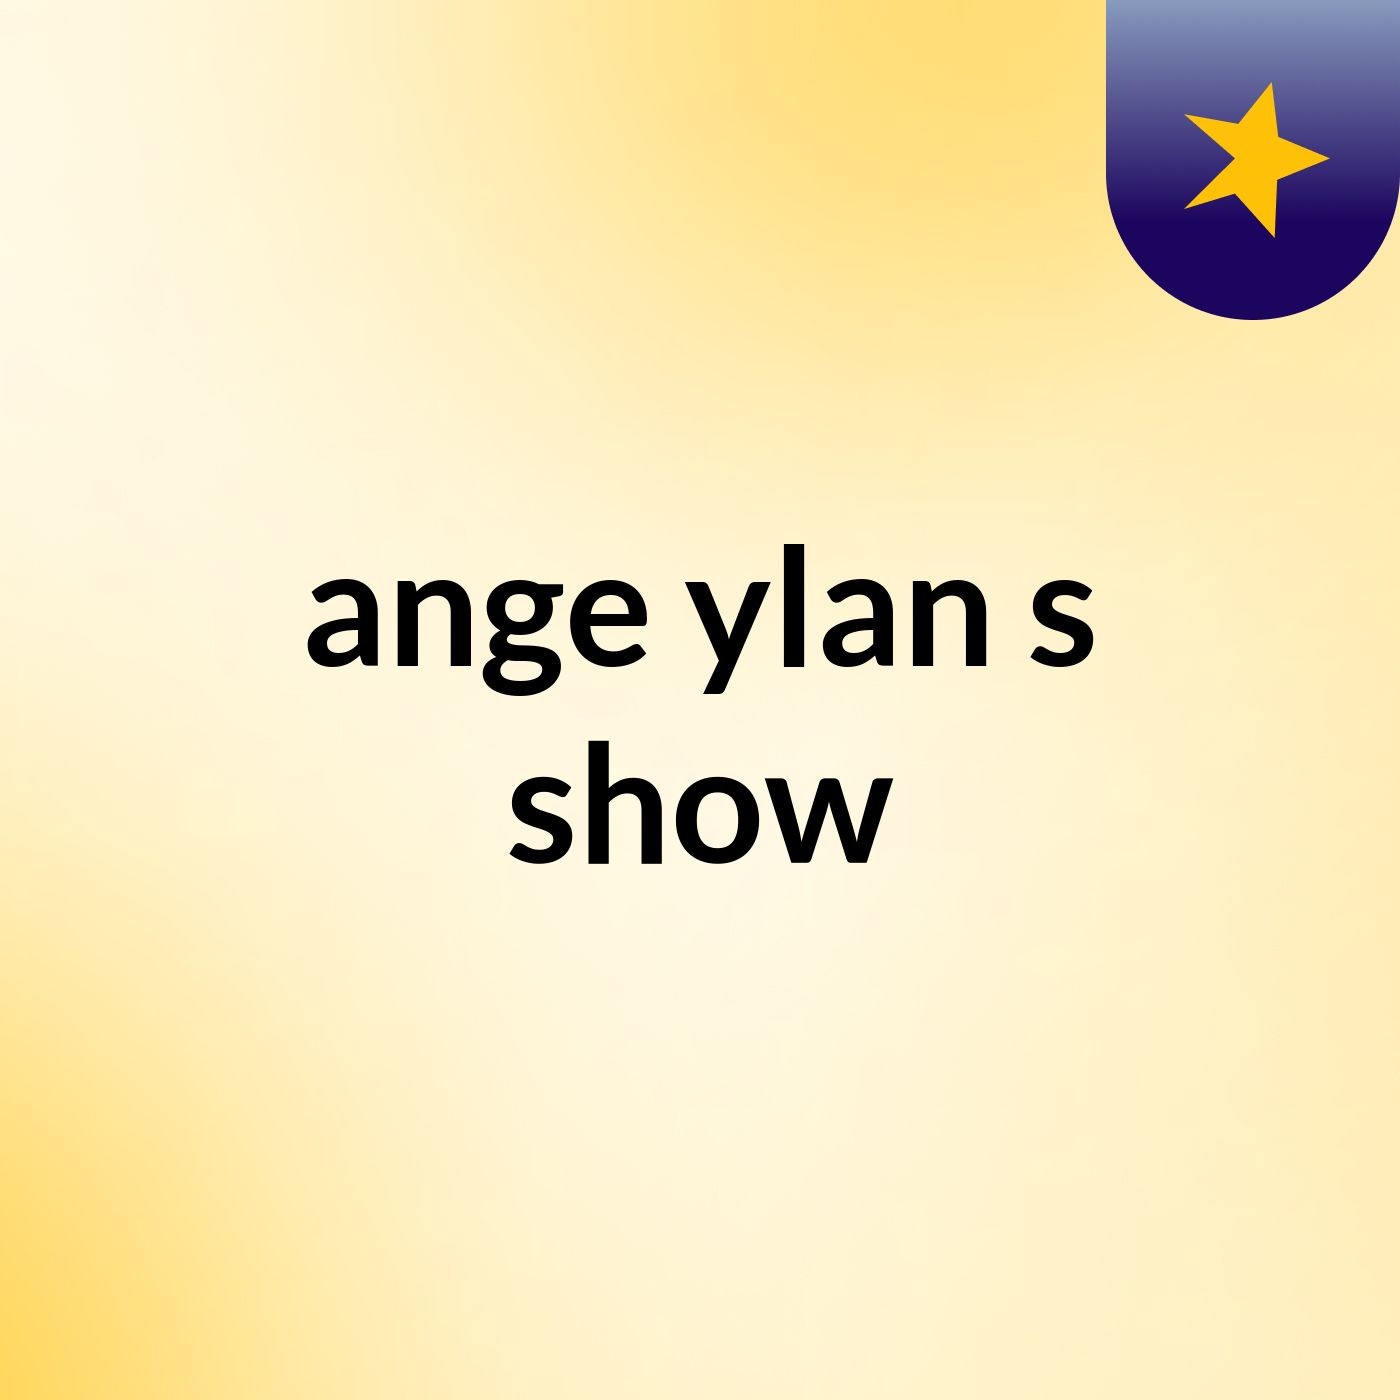 ange ylan's show